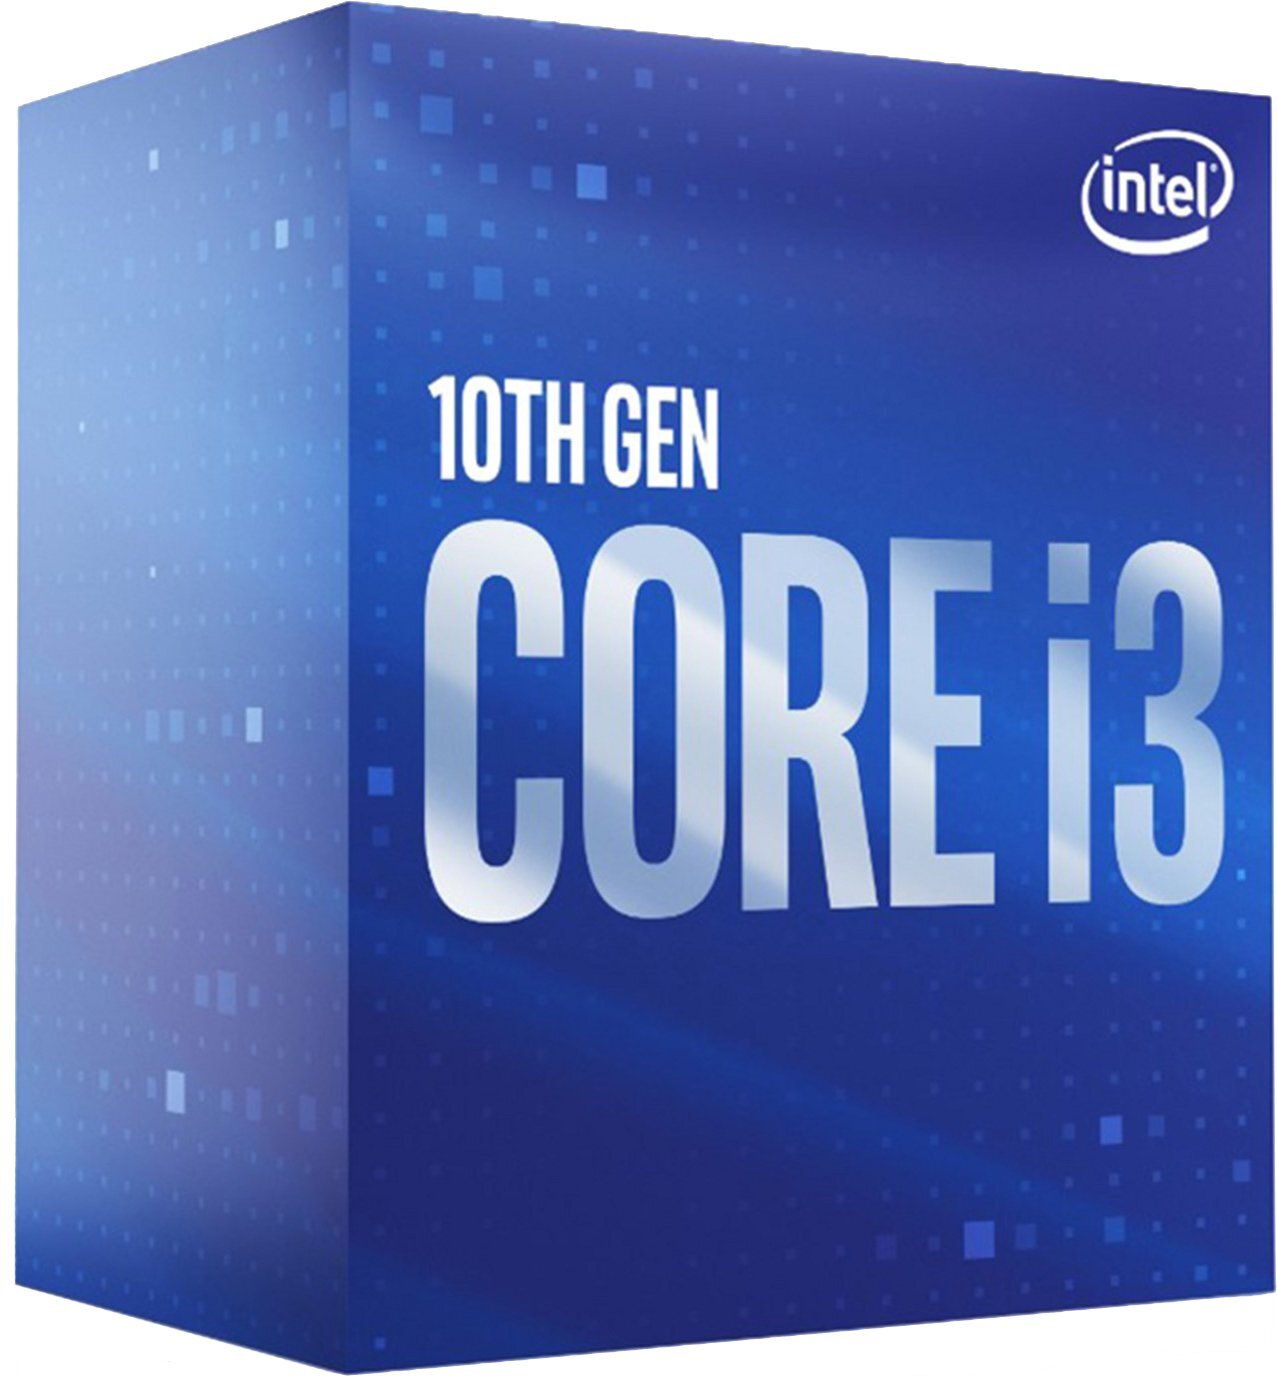 ЦПУ Intel Core i3-10105F 4/8 3.7GHz 6M LGA1200 65W w/o graphics box фото 1